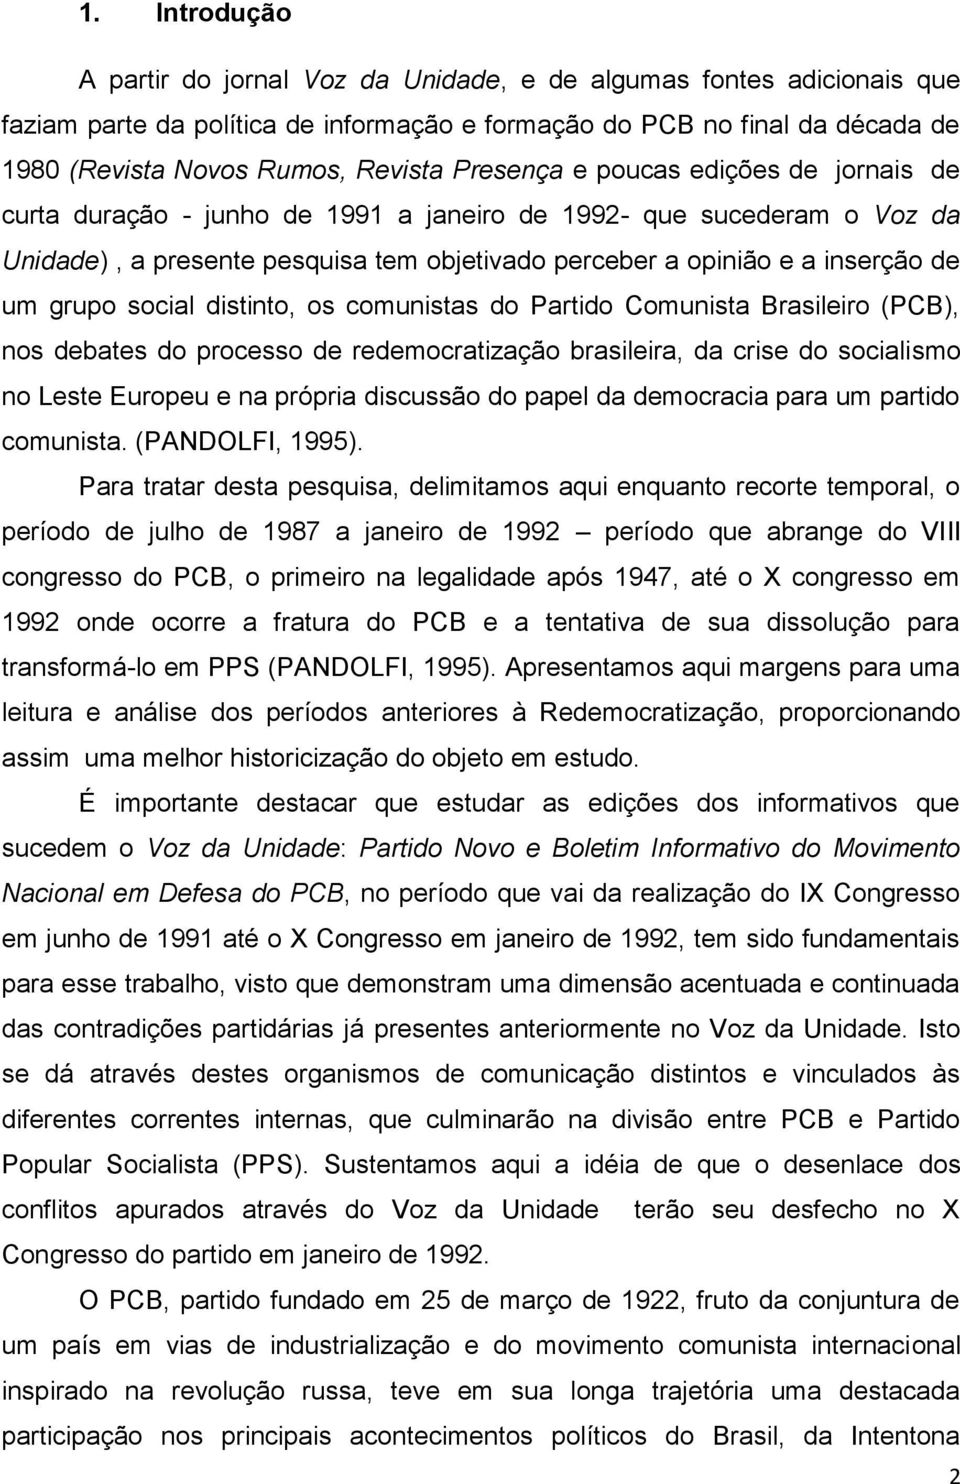 grupo social distinto, os comunistas do Partido Comunista Brasileiro (PCB), nos debates do processo de redemocratização brasileira, da crise do socialismo no Leste Europeu e na própria discussão do